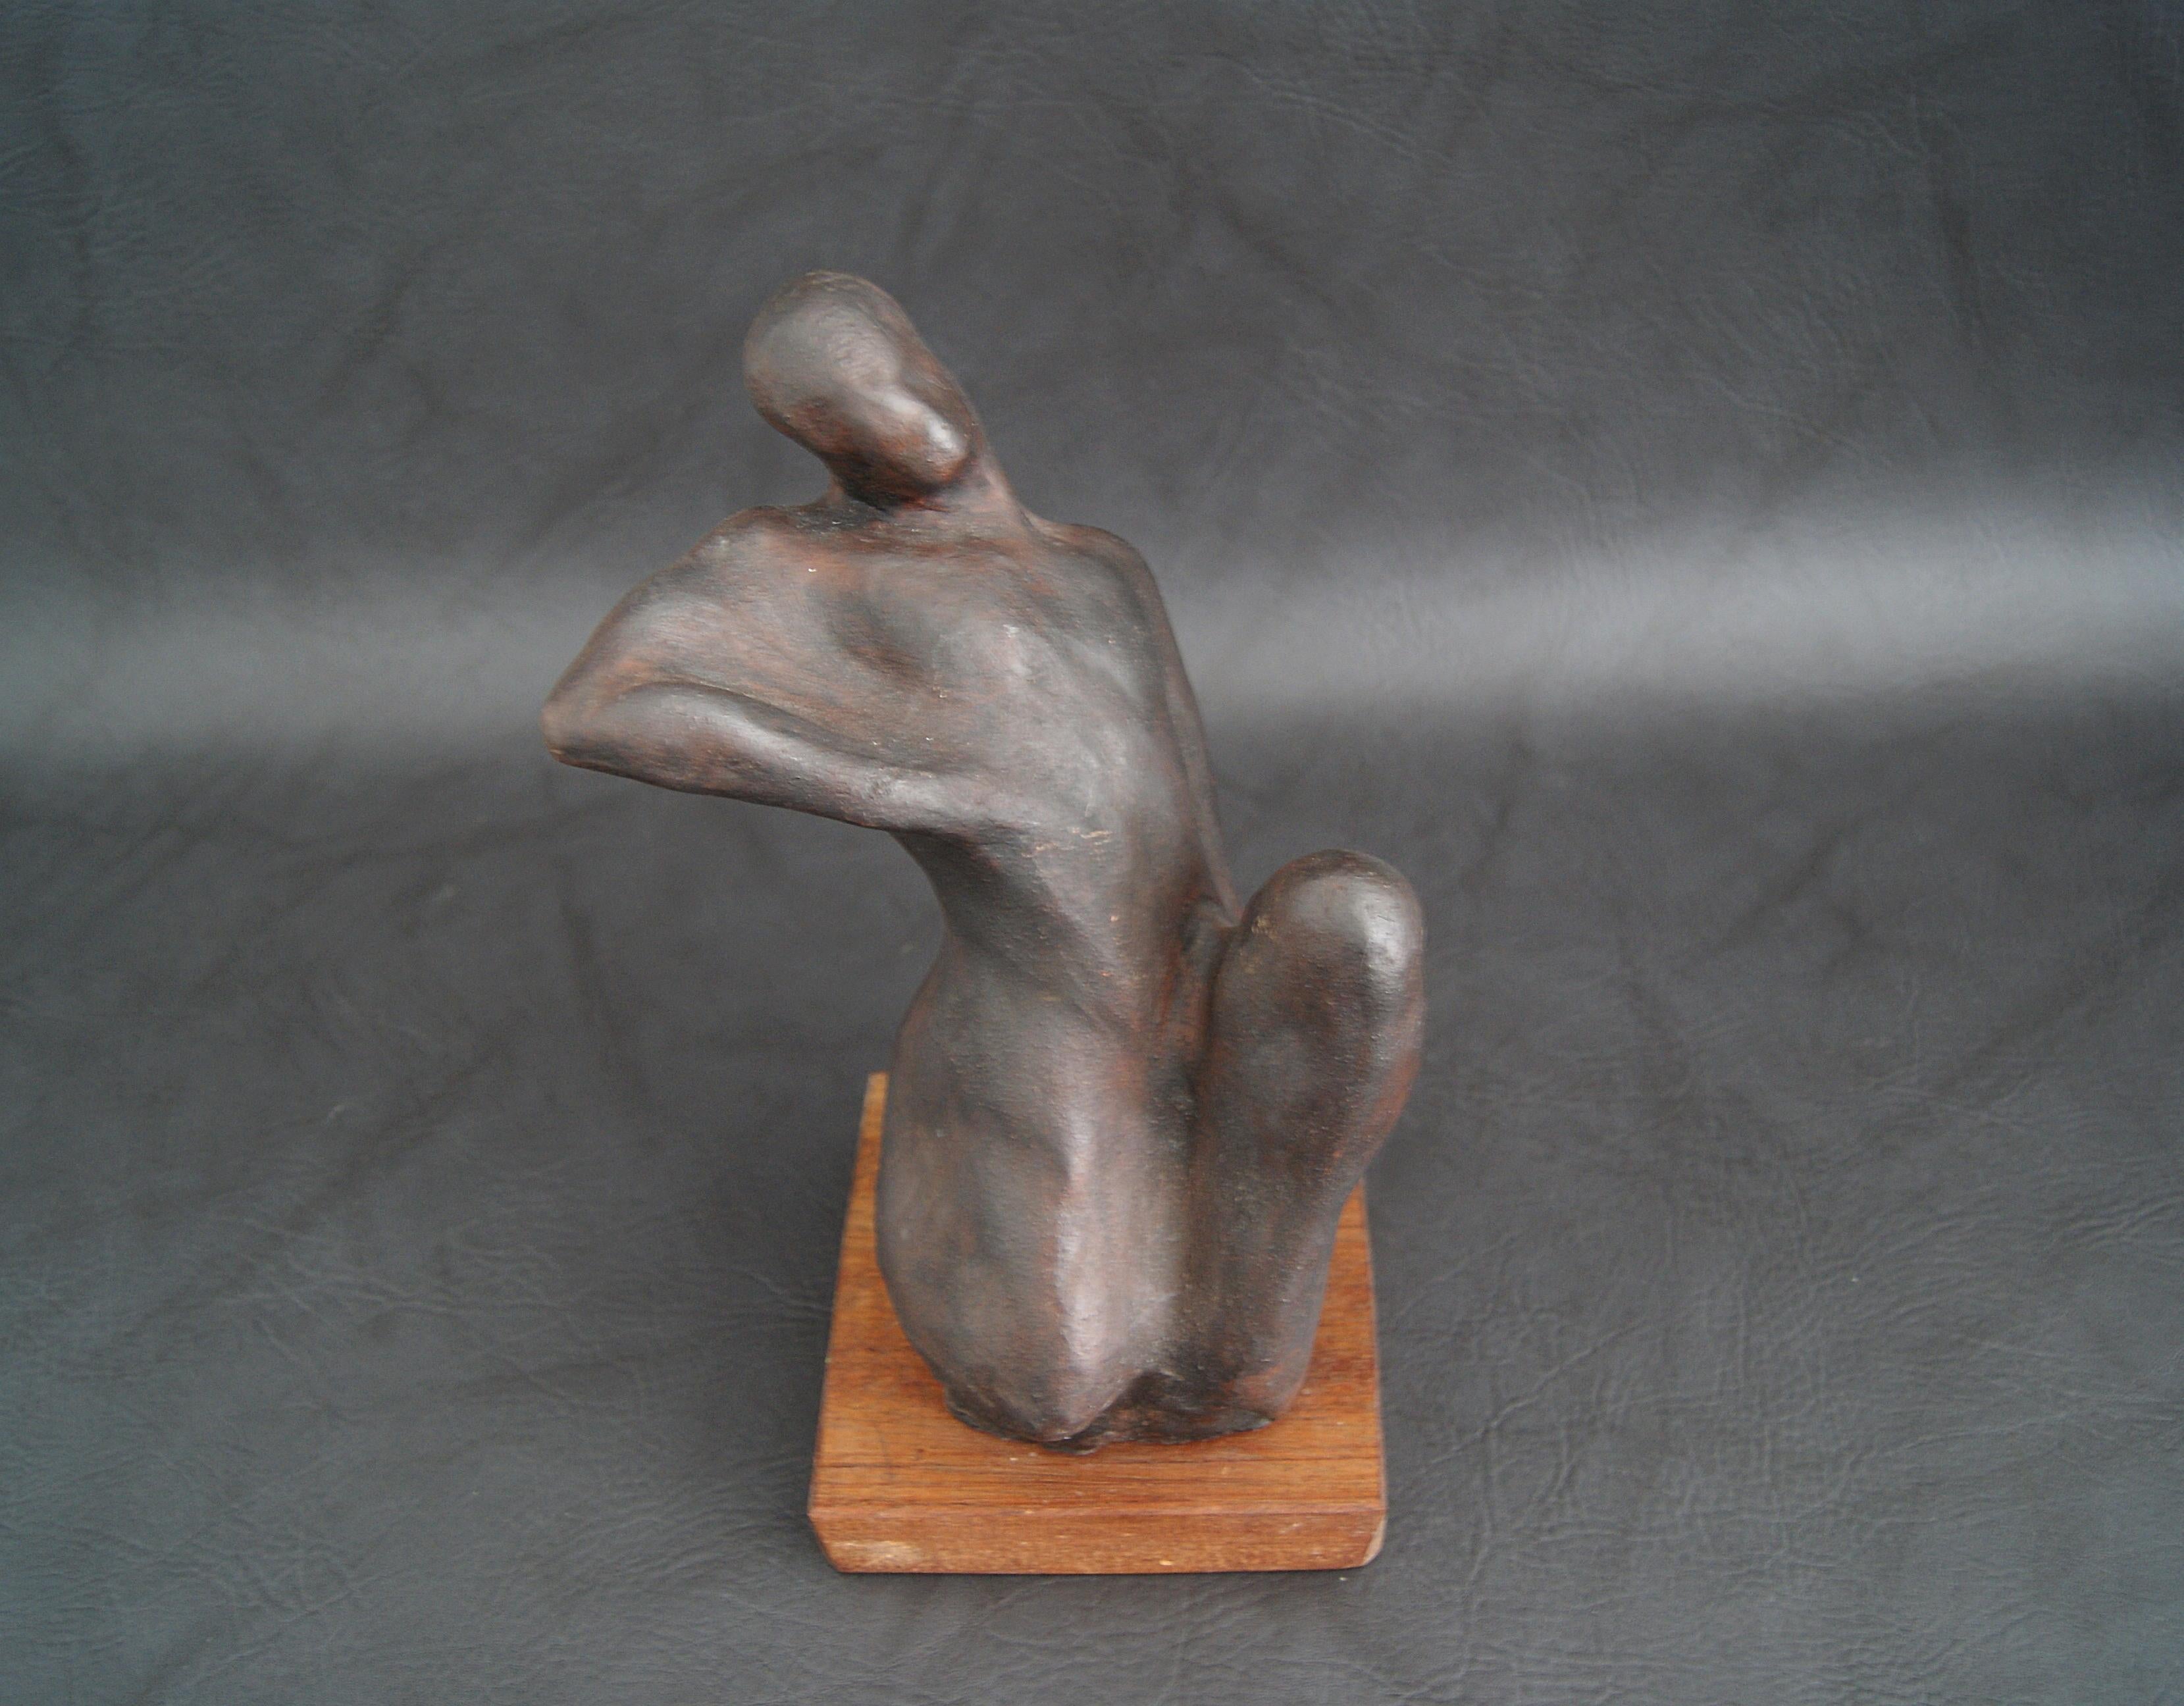 Handgeformte Skulptur aus Gips mit patinierter Bronze auf einem Holzsockel. Die Gipsfigur ist von dem deutschen Künstler TADÄUS aus der Serie formlose Körperformen von 2002. Ein sehr dekoratives Einzelstück, das zur Interpretation einlädt. Die